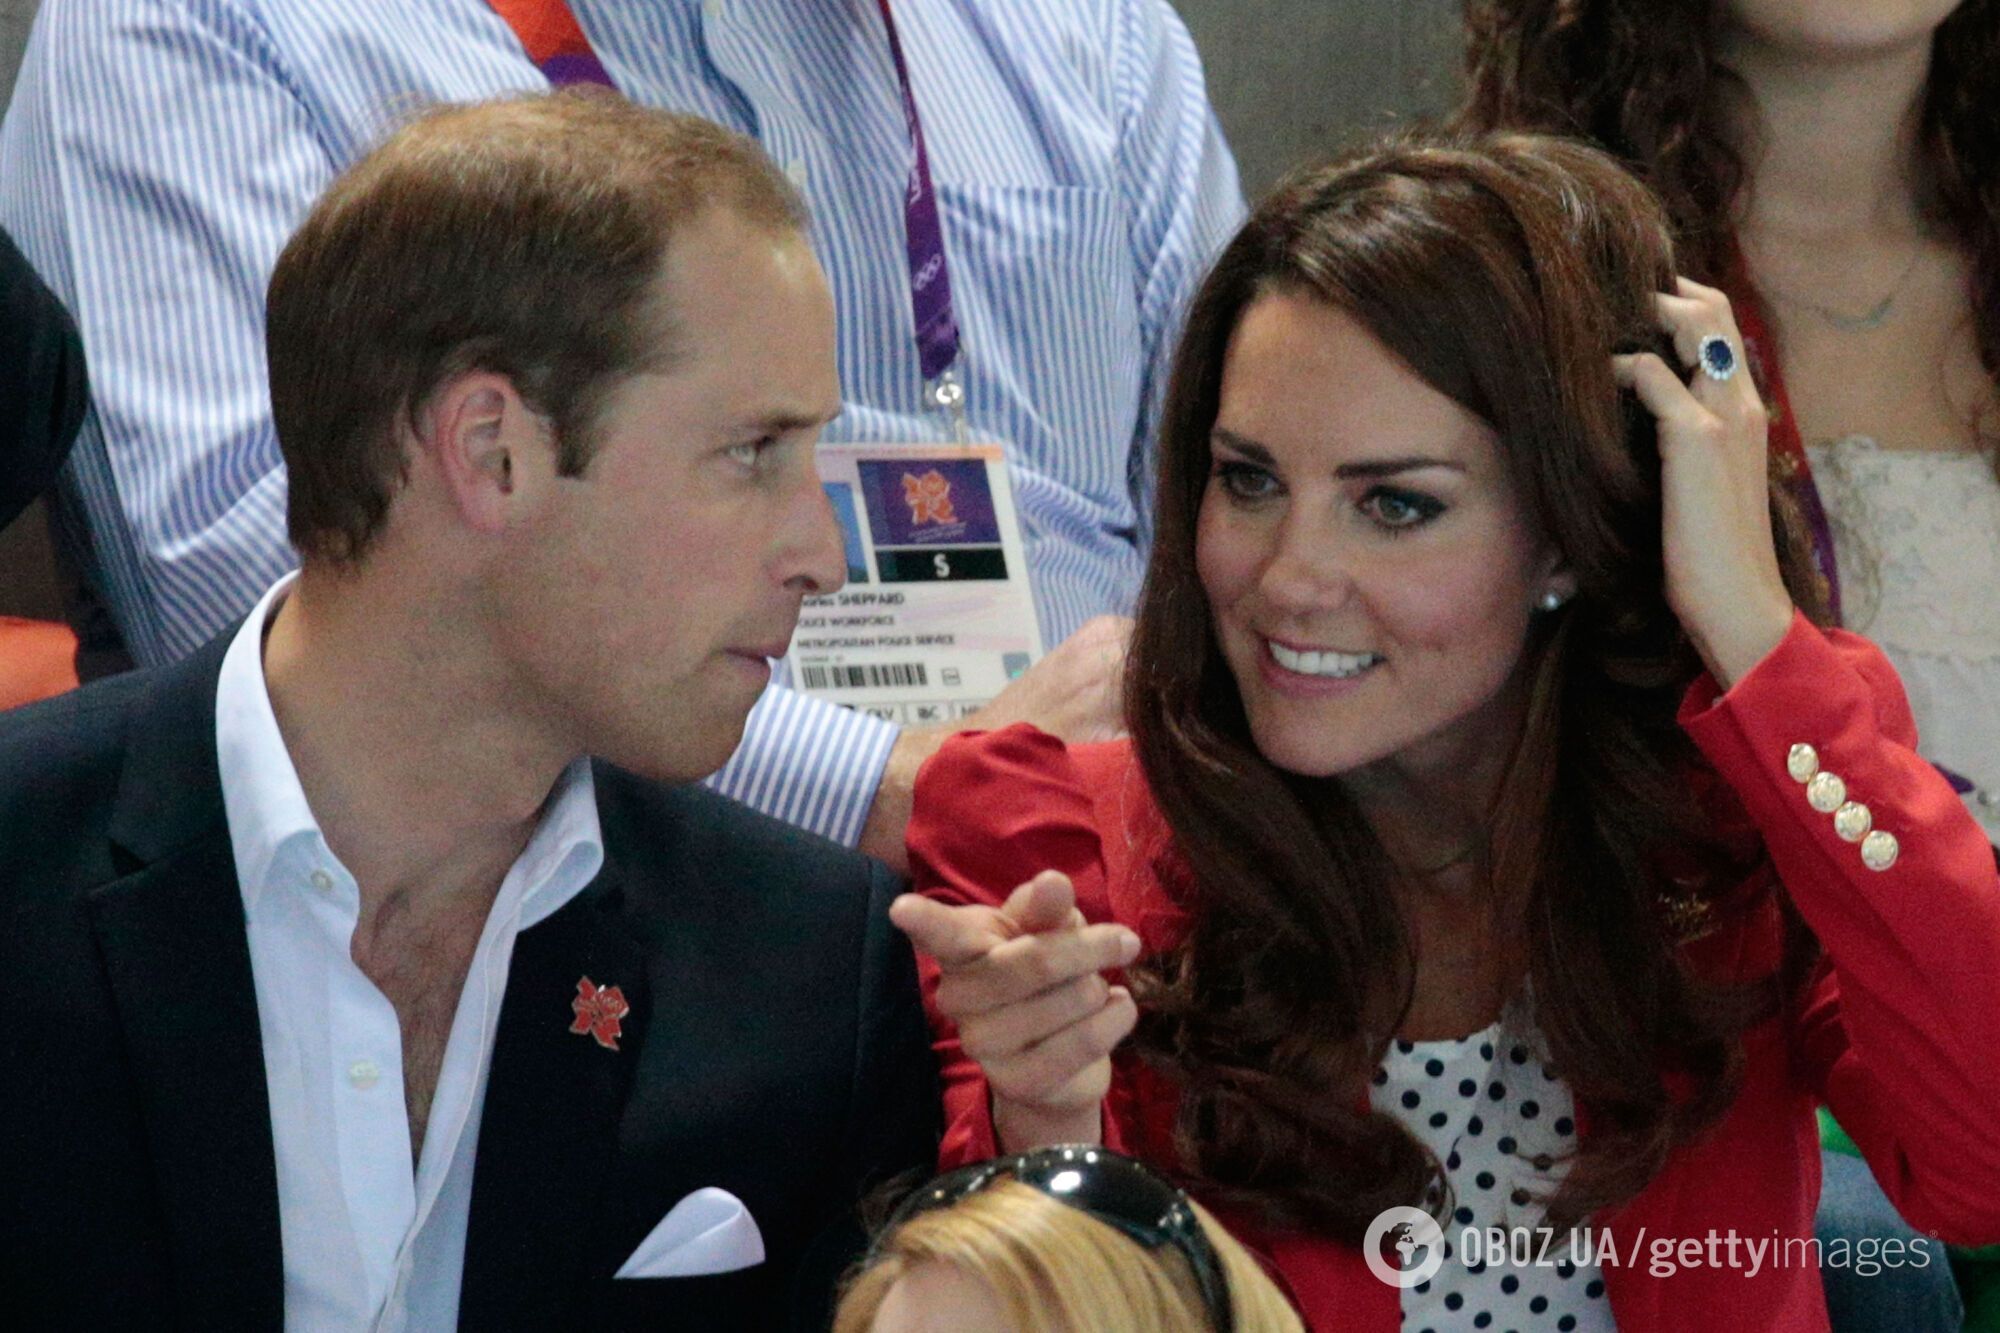 "Она моя!" 10 красноречивых фото, отражающих истинное отношение принца Уильяма к Кейт Миддлтон